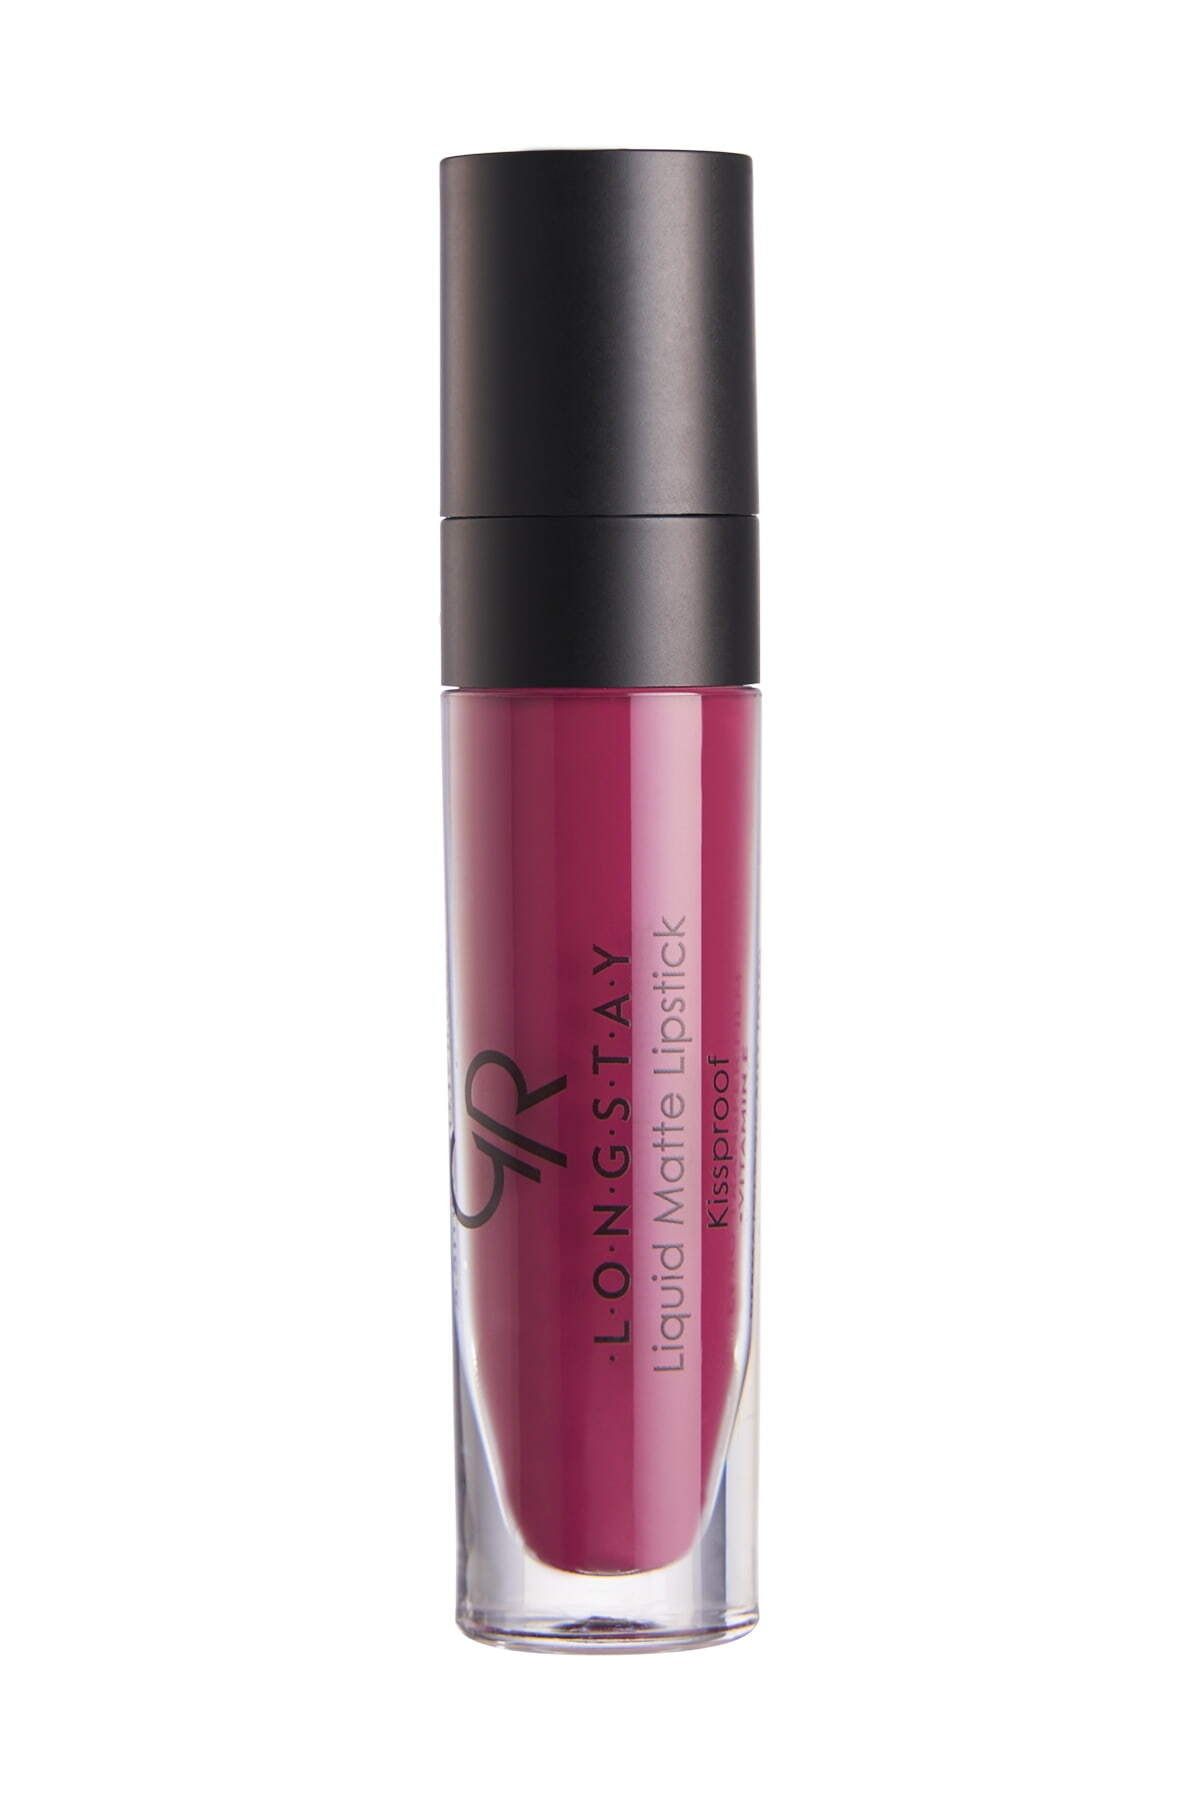 Golden Rose Longstay Liquid Matte Lipstick No: 05 Cranberry - Likit Mat Ruj